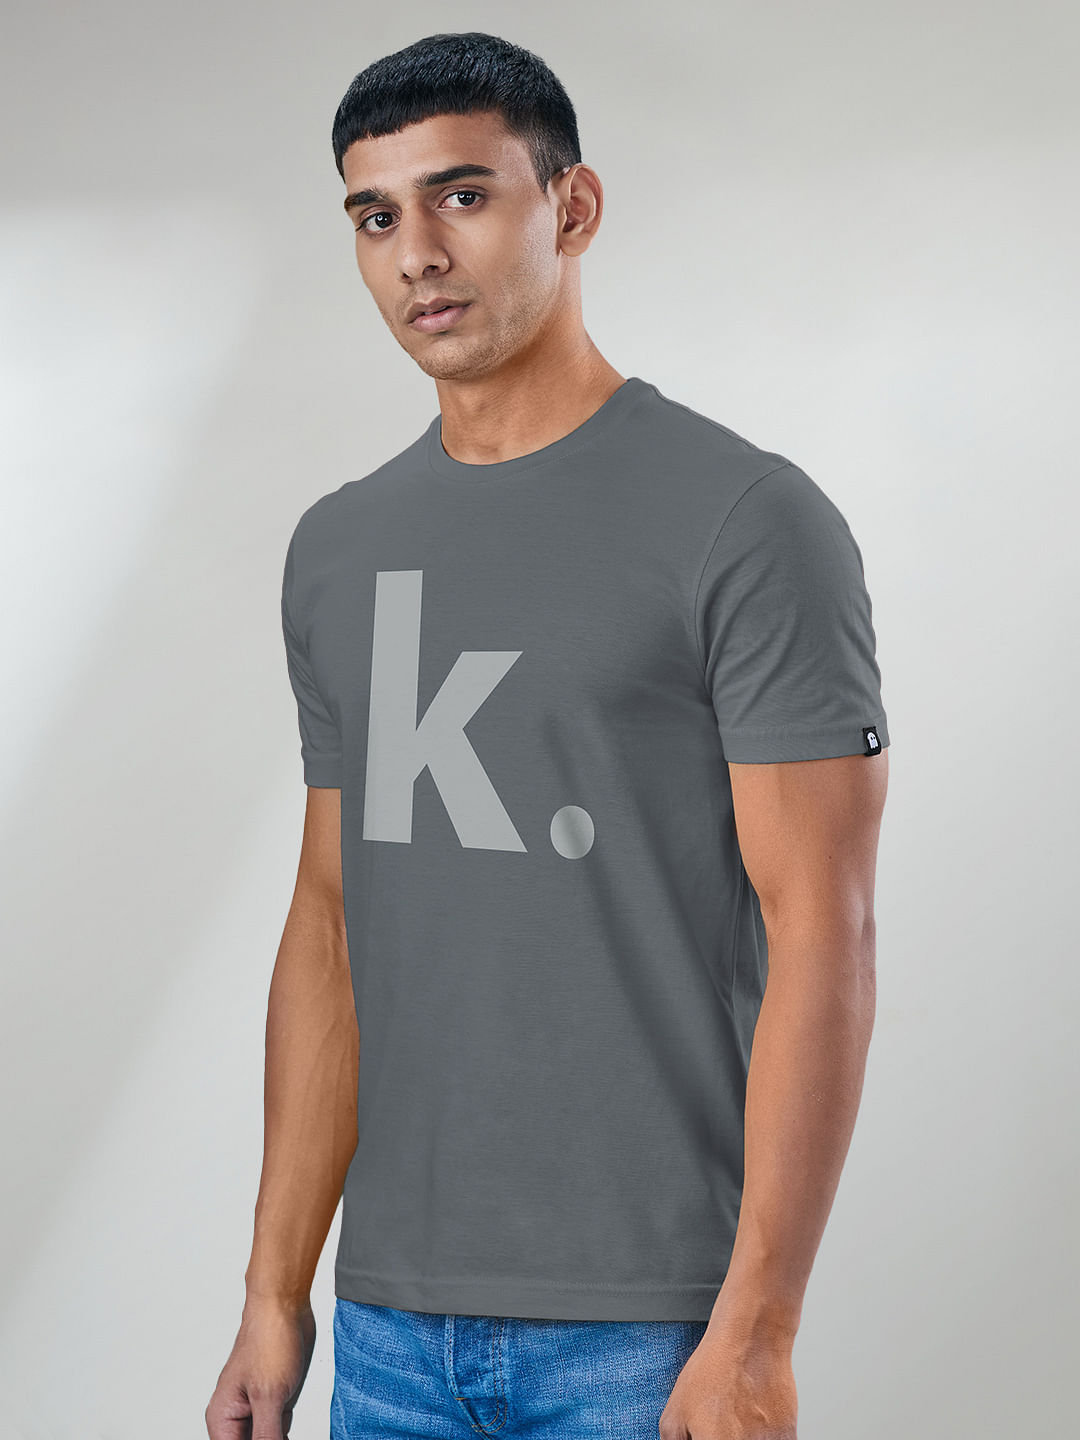 souled store' Unisex Baseball T-Shirt | Spreadshirt